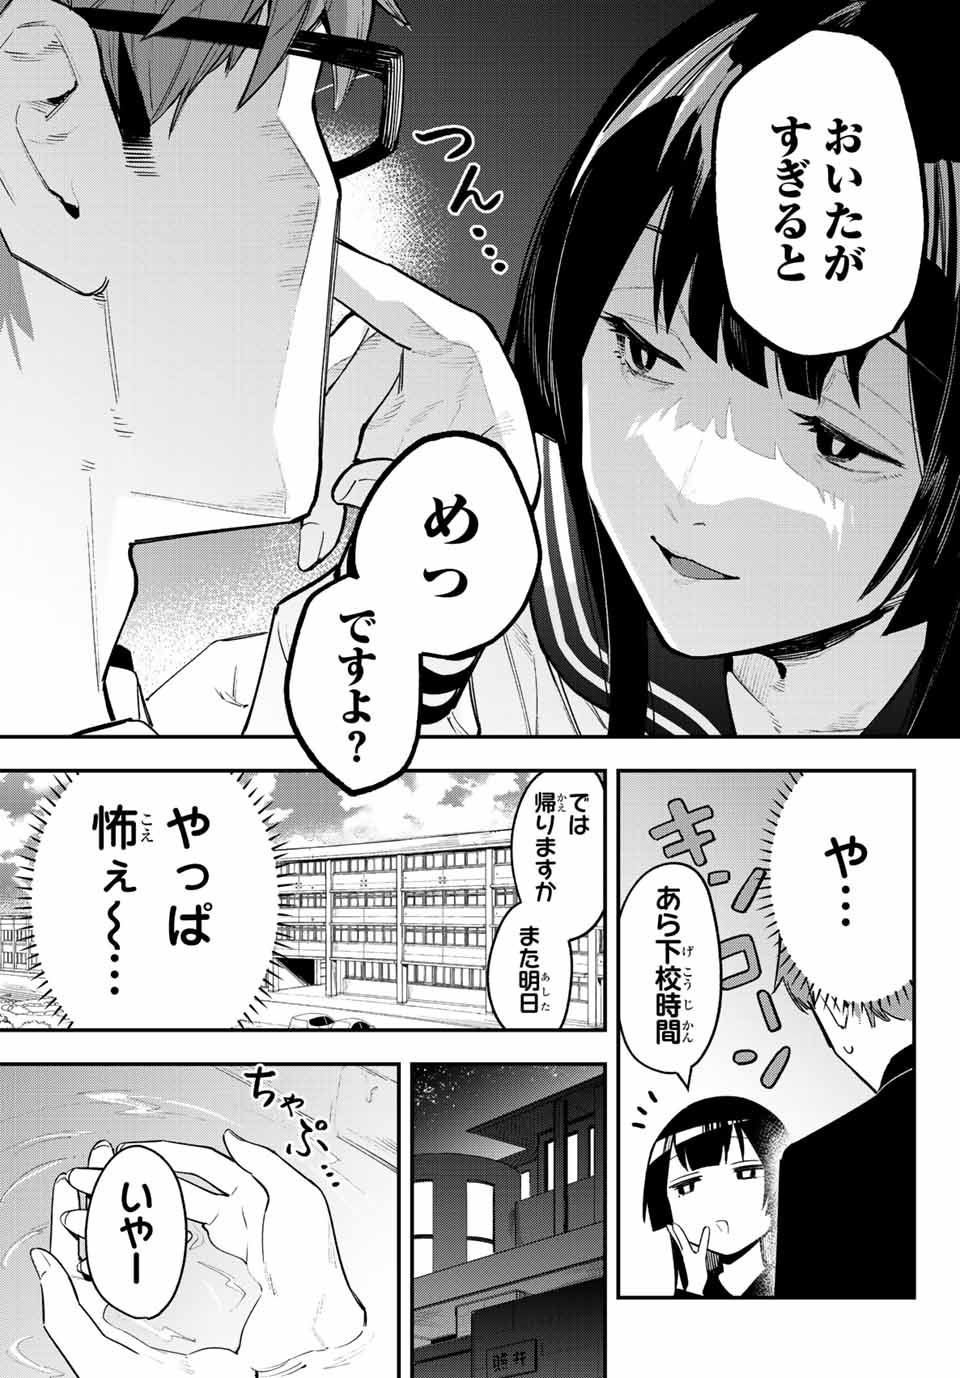 Seitokai mi mo Ana wa Aru! - Chapter 3 - Page 7